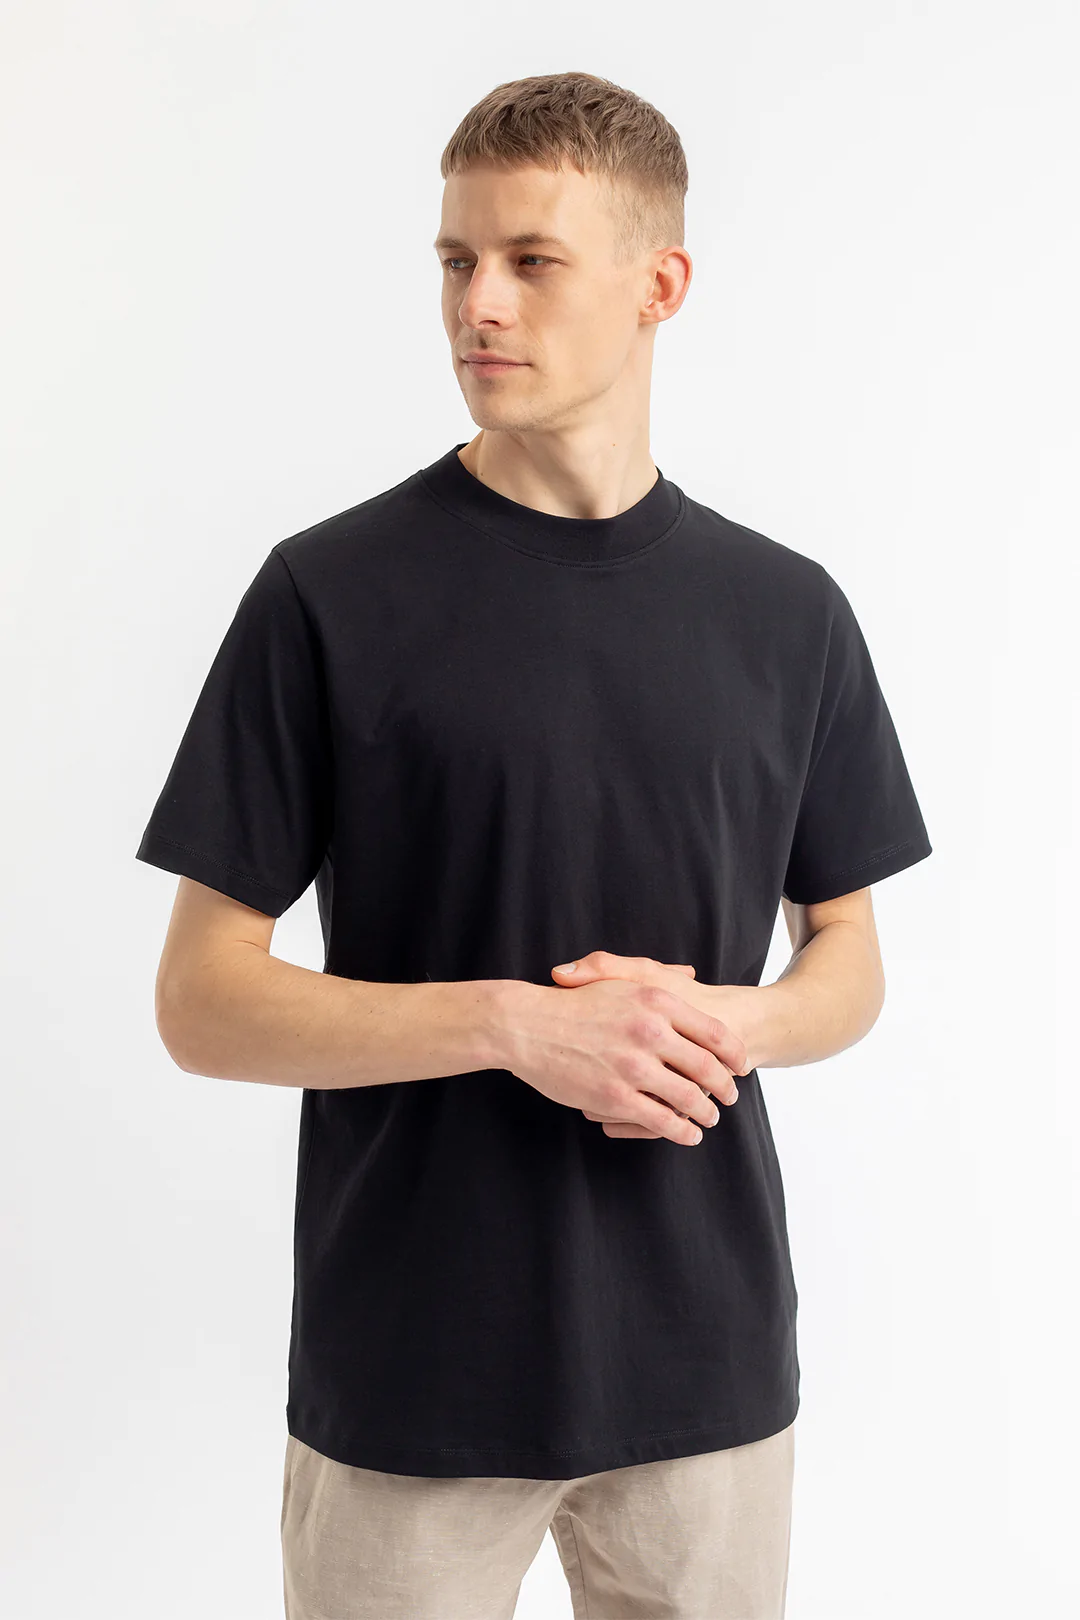 ROTHOLZ Big Collar T-Shirt black XL